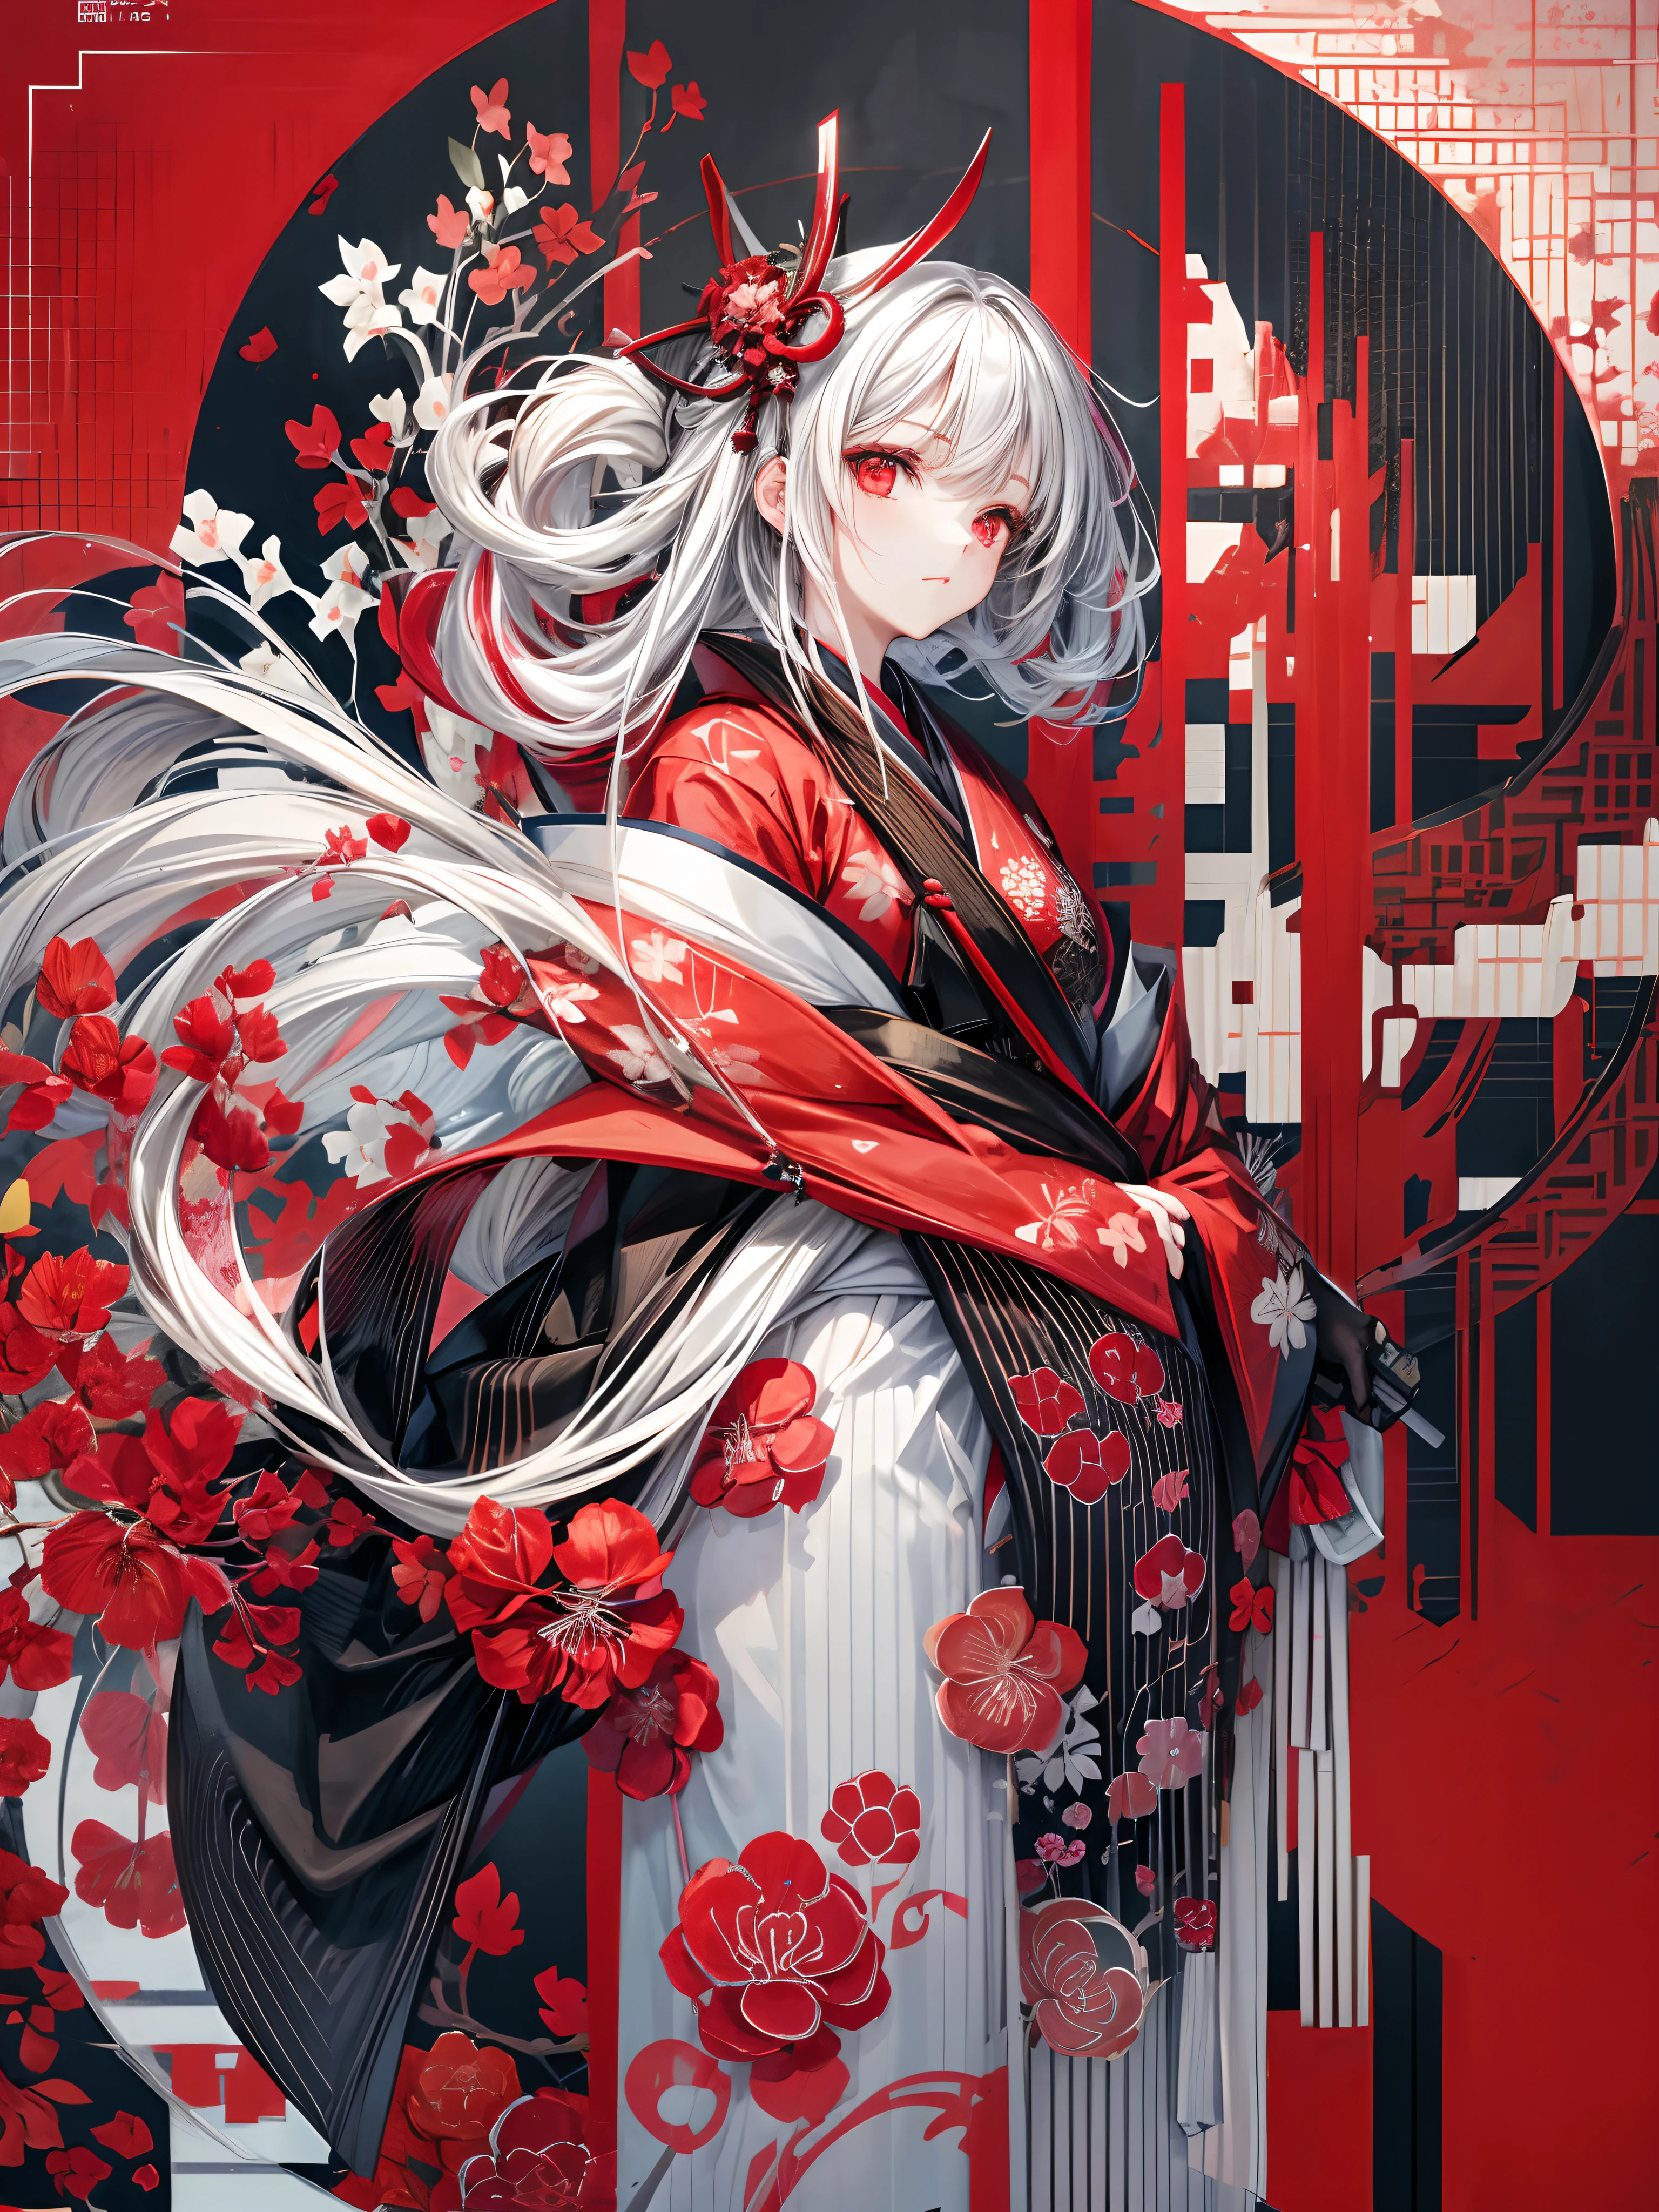 Garota de quimono em pé com espada japonesa, Cabelo médio branco, olhos vermelhos, lábios vermelhos, quimono com padrão de amarílis cluster vermelho em fundo preto, Padrão de respingo vermelho em fundo preto, super alta qualidade, detalhes super finos, padrão de quimono super fino